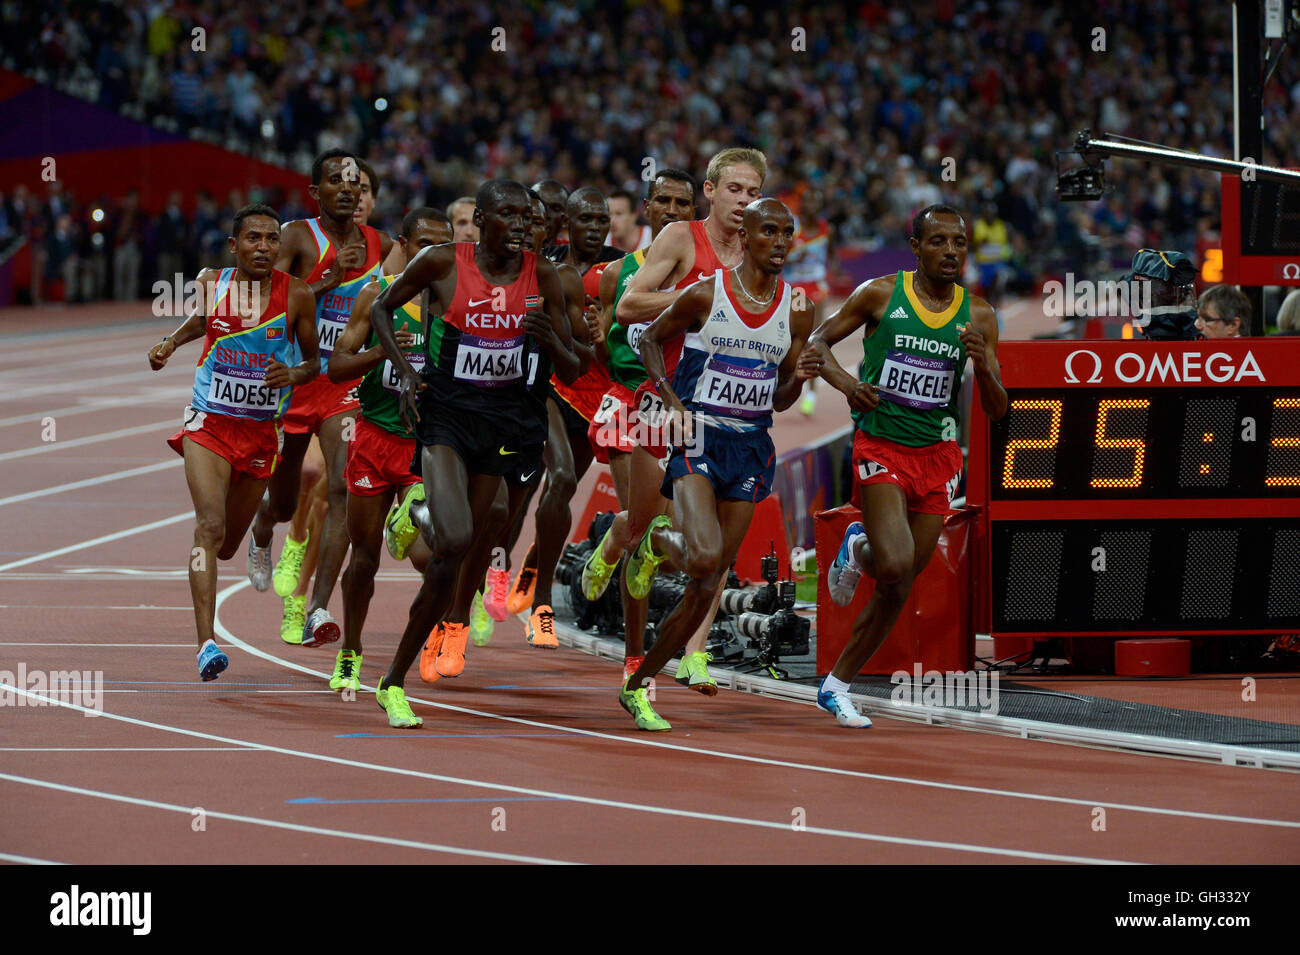 Londres 2012 - Jeux olympiques : Athlétisme - finale de 10 000 mètres. Mohamed Farah de Grande-bretagne remportant la médaille d'or. Banque D'Images